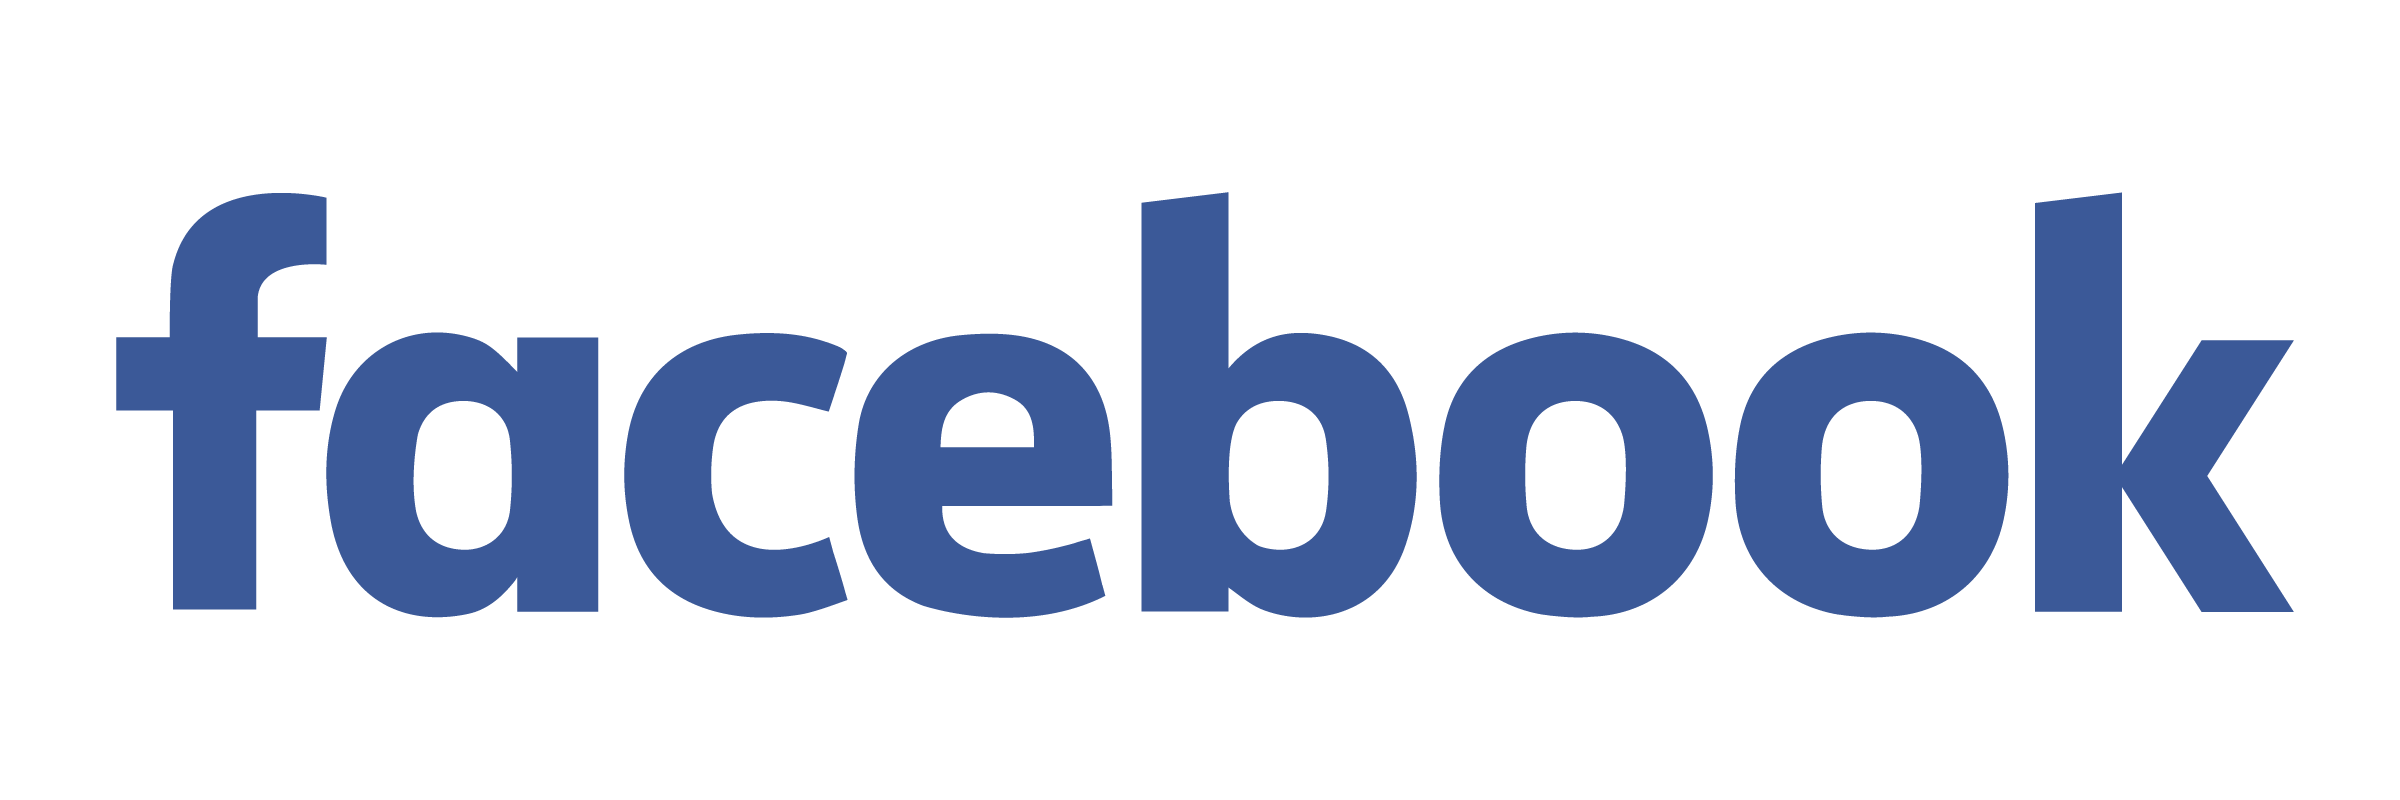 Full Logo - Facebook Logo PNG Transparent & SVG Vector